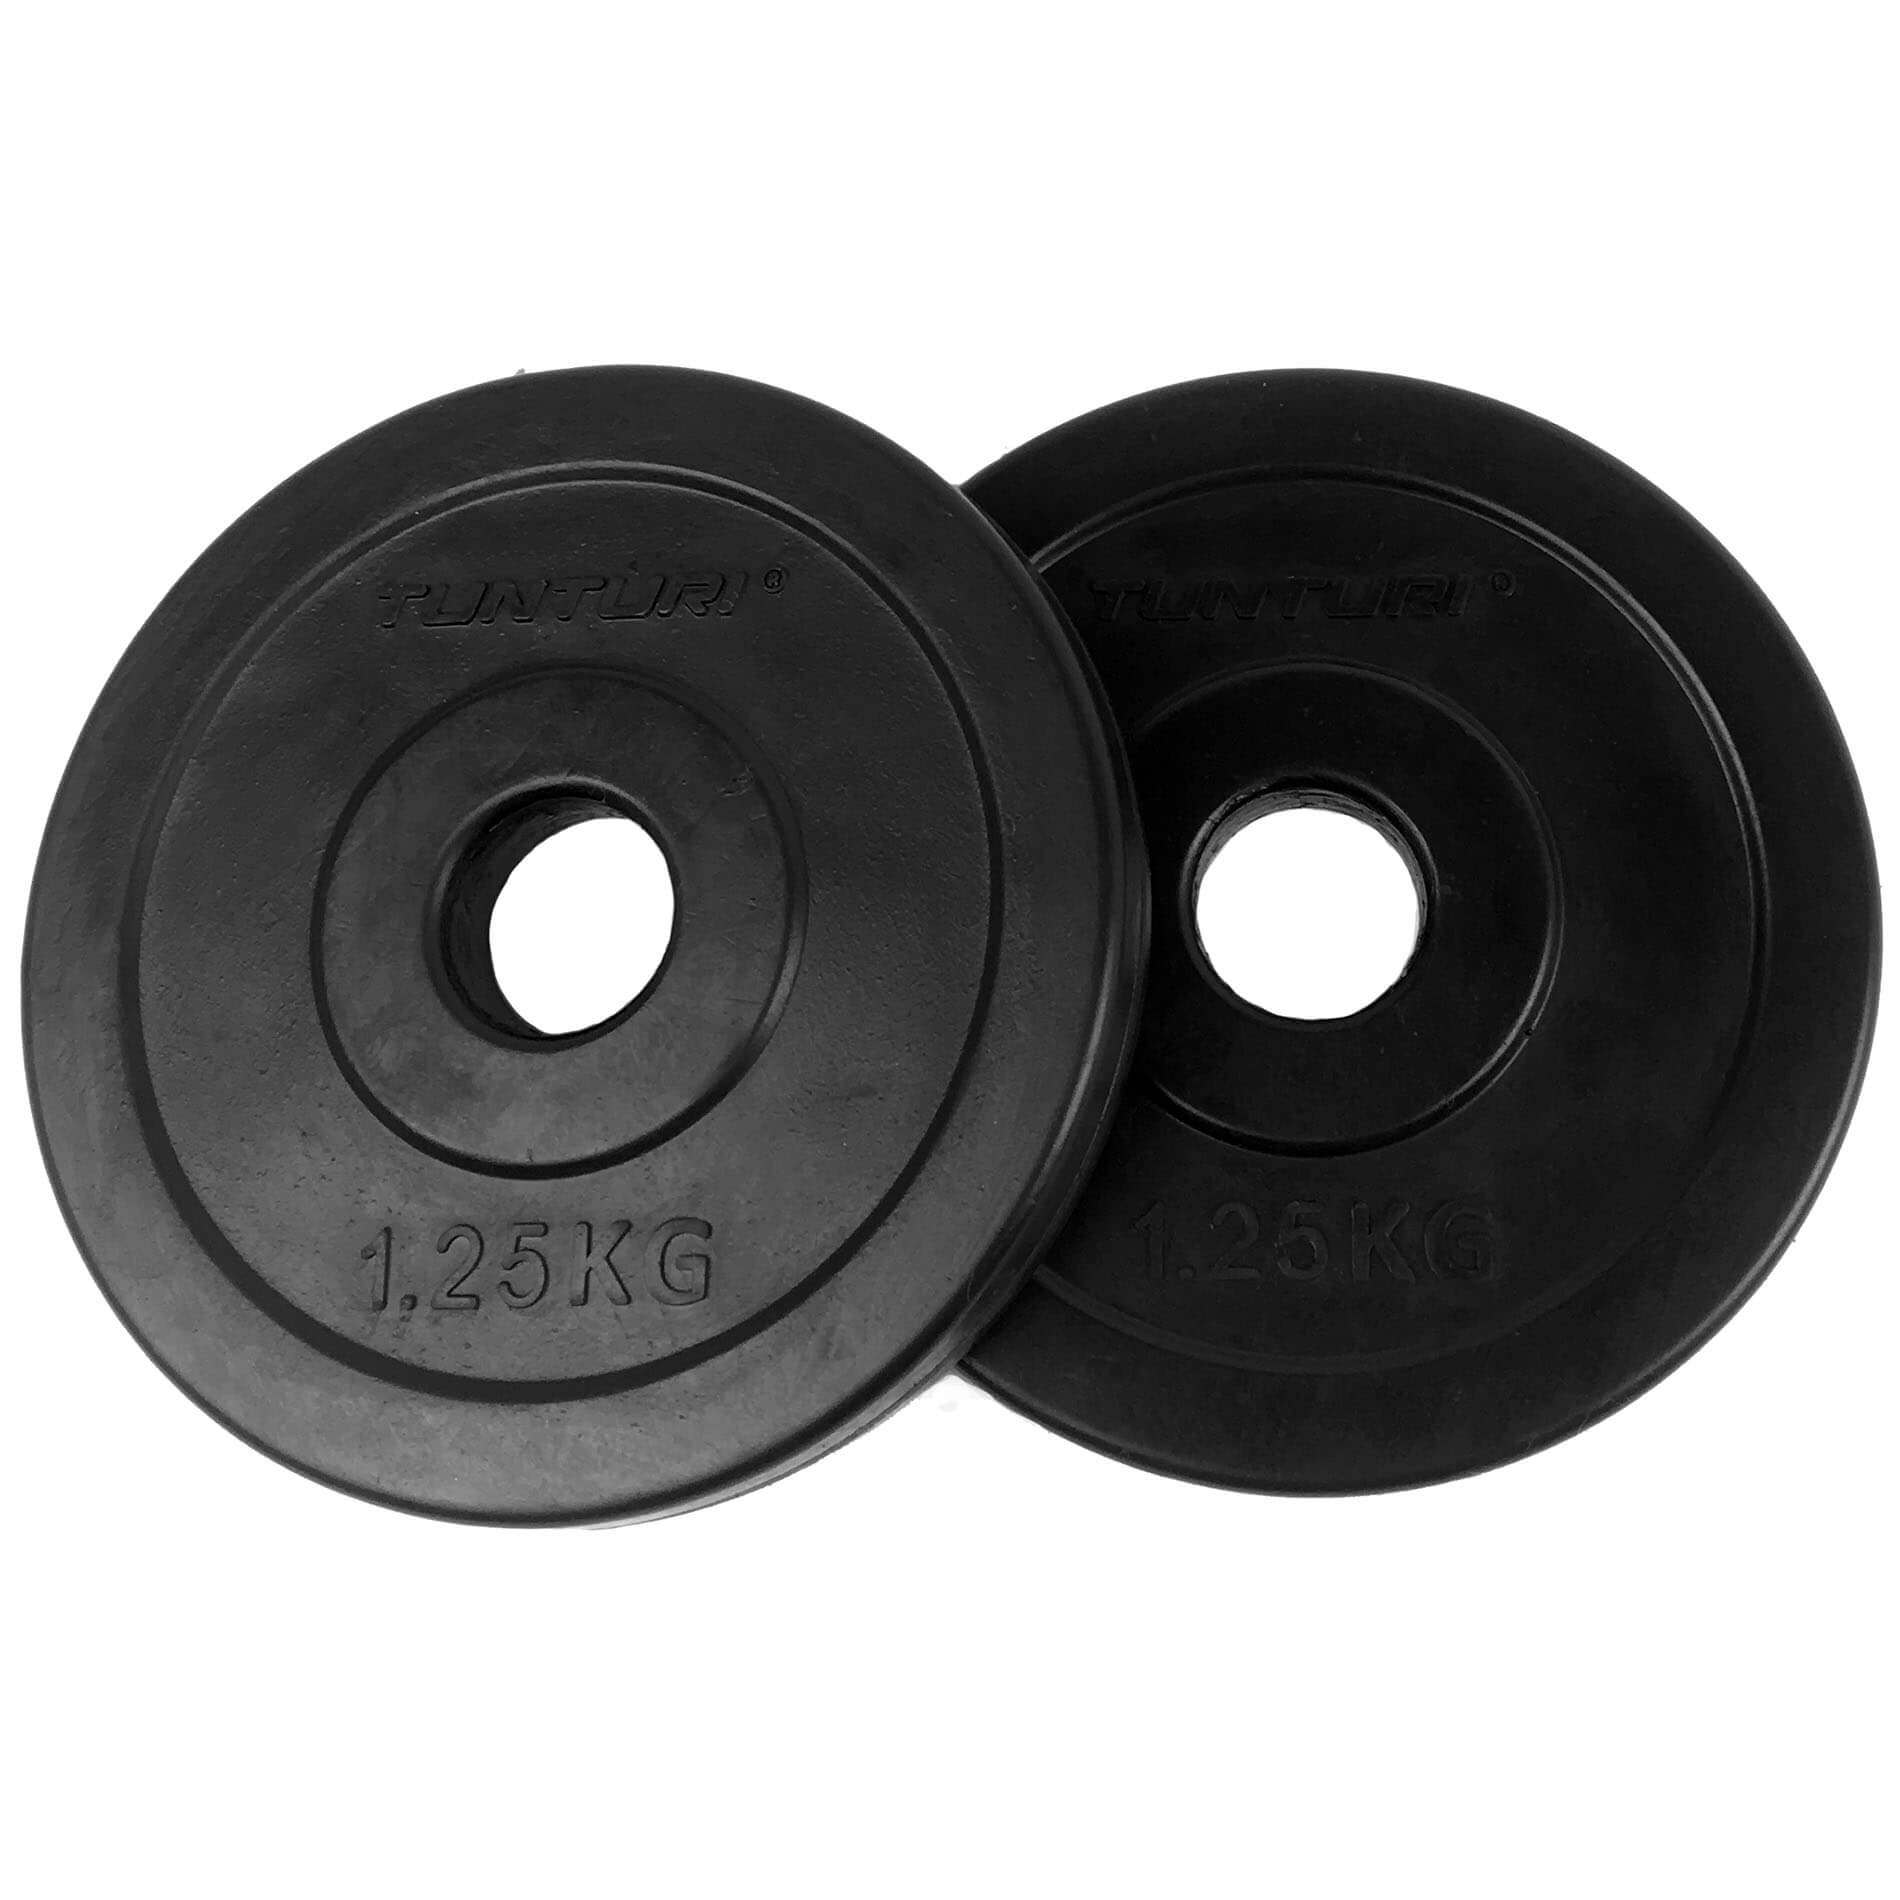 Bezet onwettig Miniatuur Rubber Plates - Tunturi 30 mm | Fitnessking